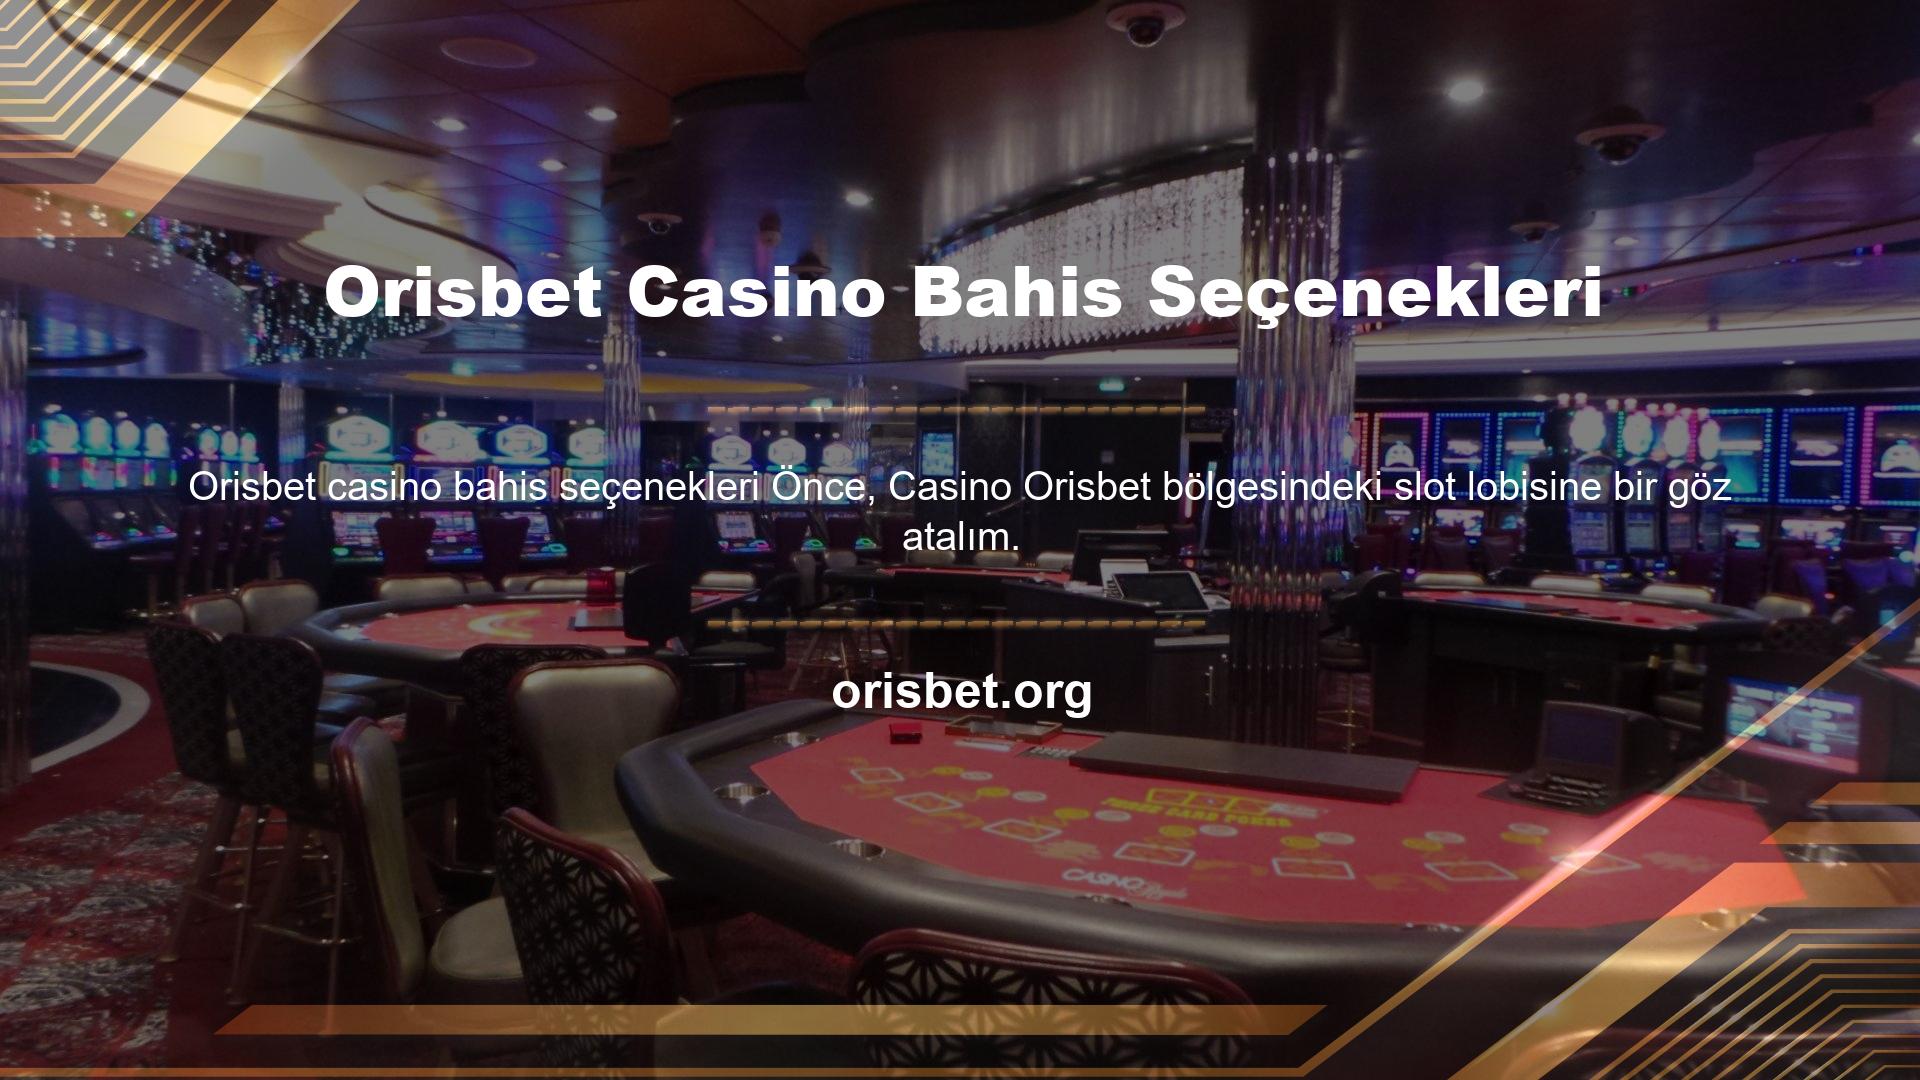 İçerik, sitede sanal slot olarak bulunan ünlü casino slotlarıdır